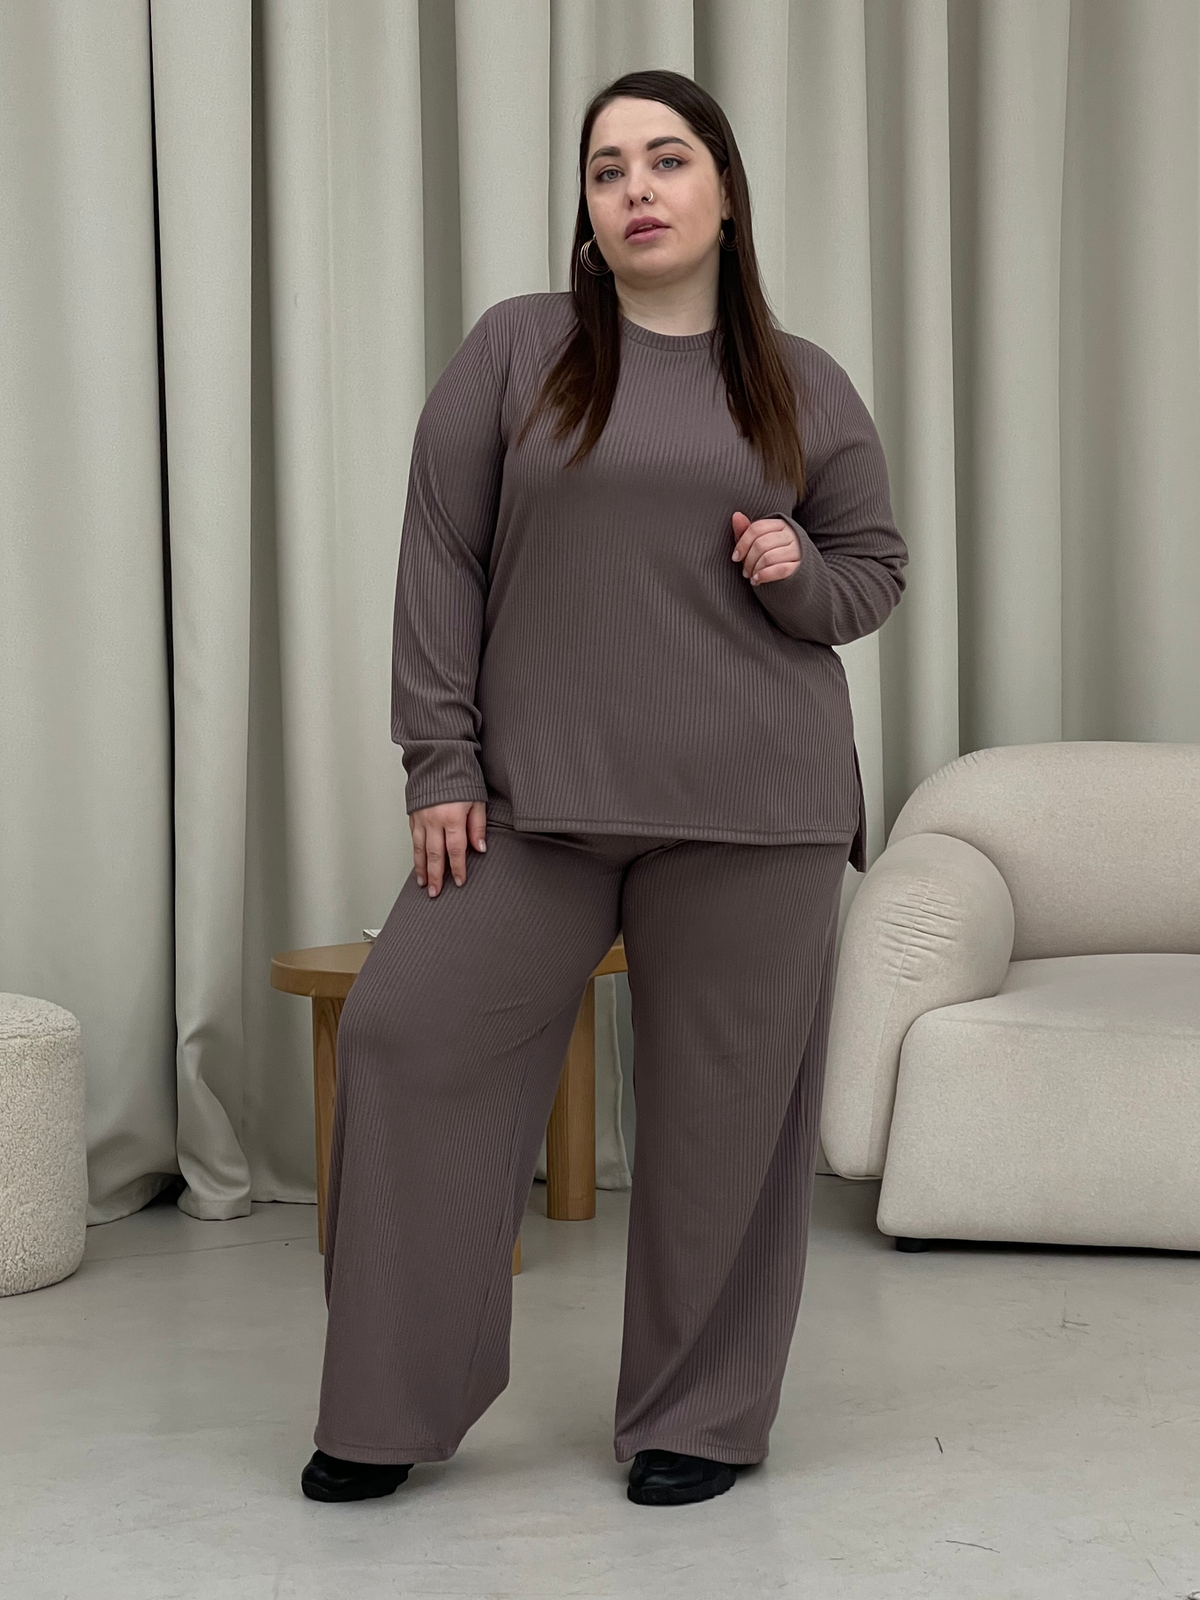 Купить Костюм с широкими брюками в рубчик цвет мокко Merlini Менто 100001164, размер 42-44 (S-M) в интернет-магазине